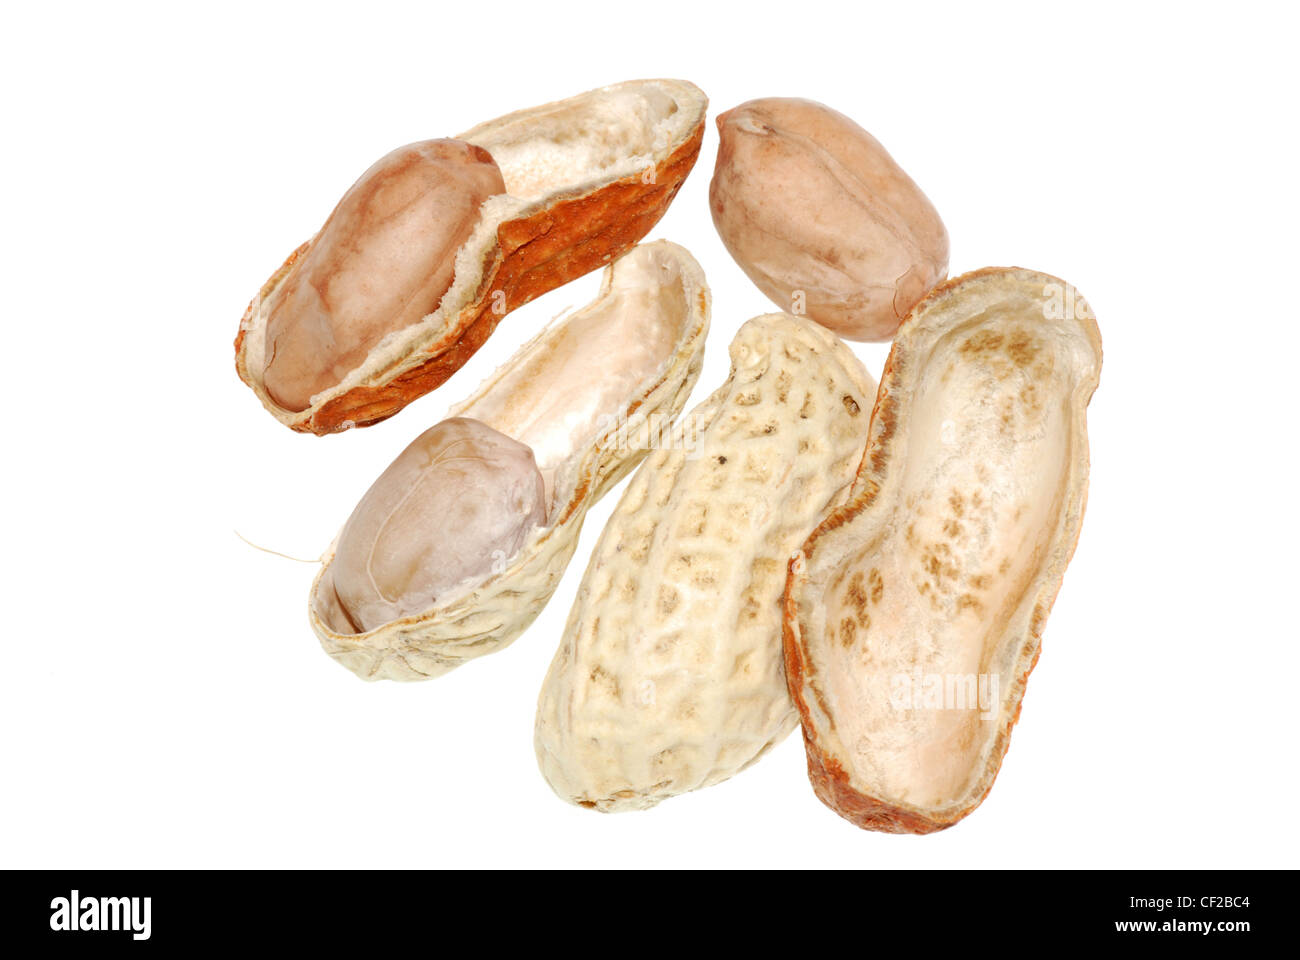 peanut isolated on white background Stock Photo